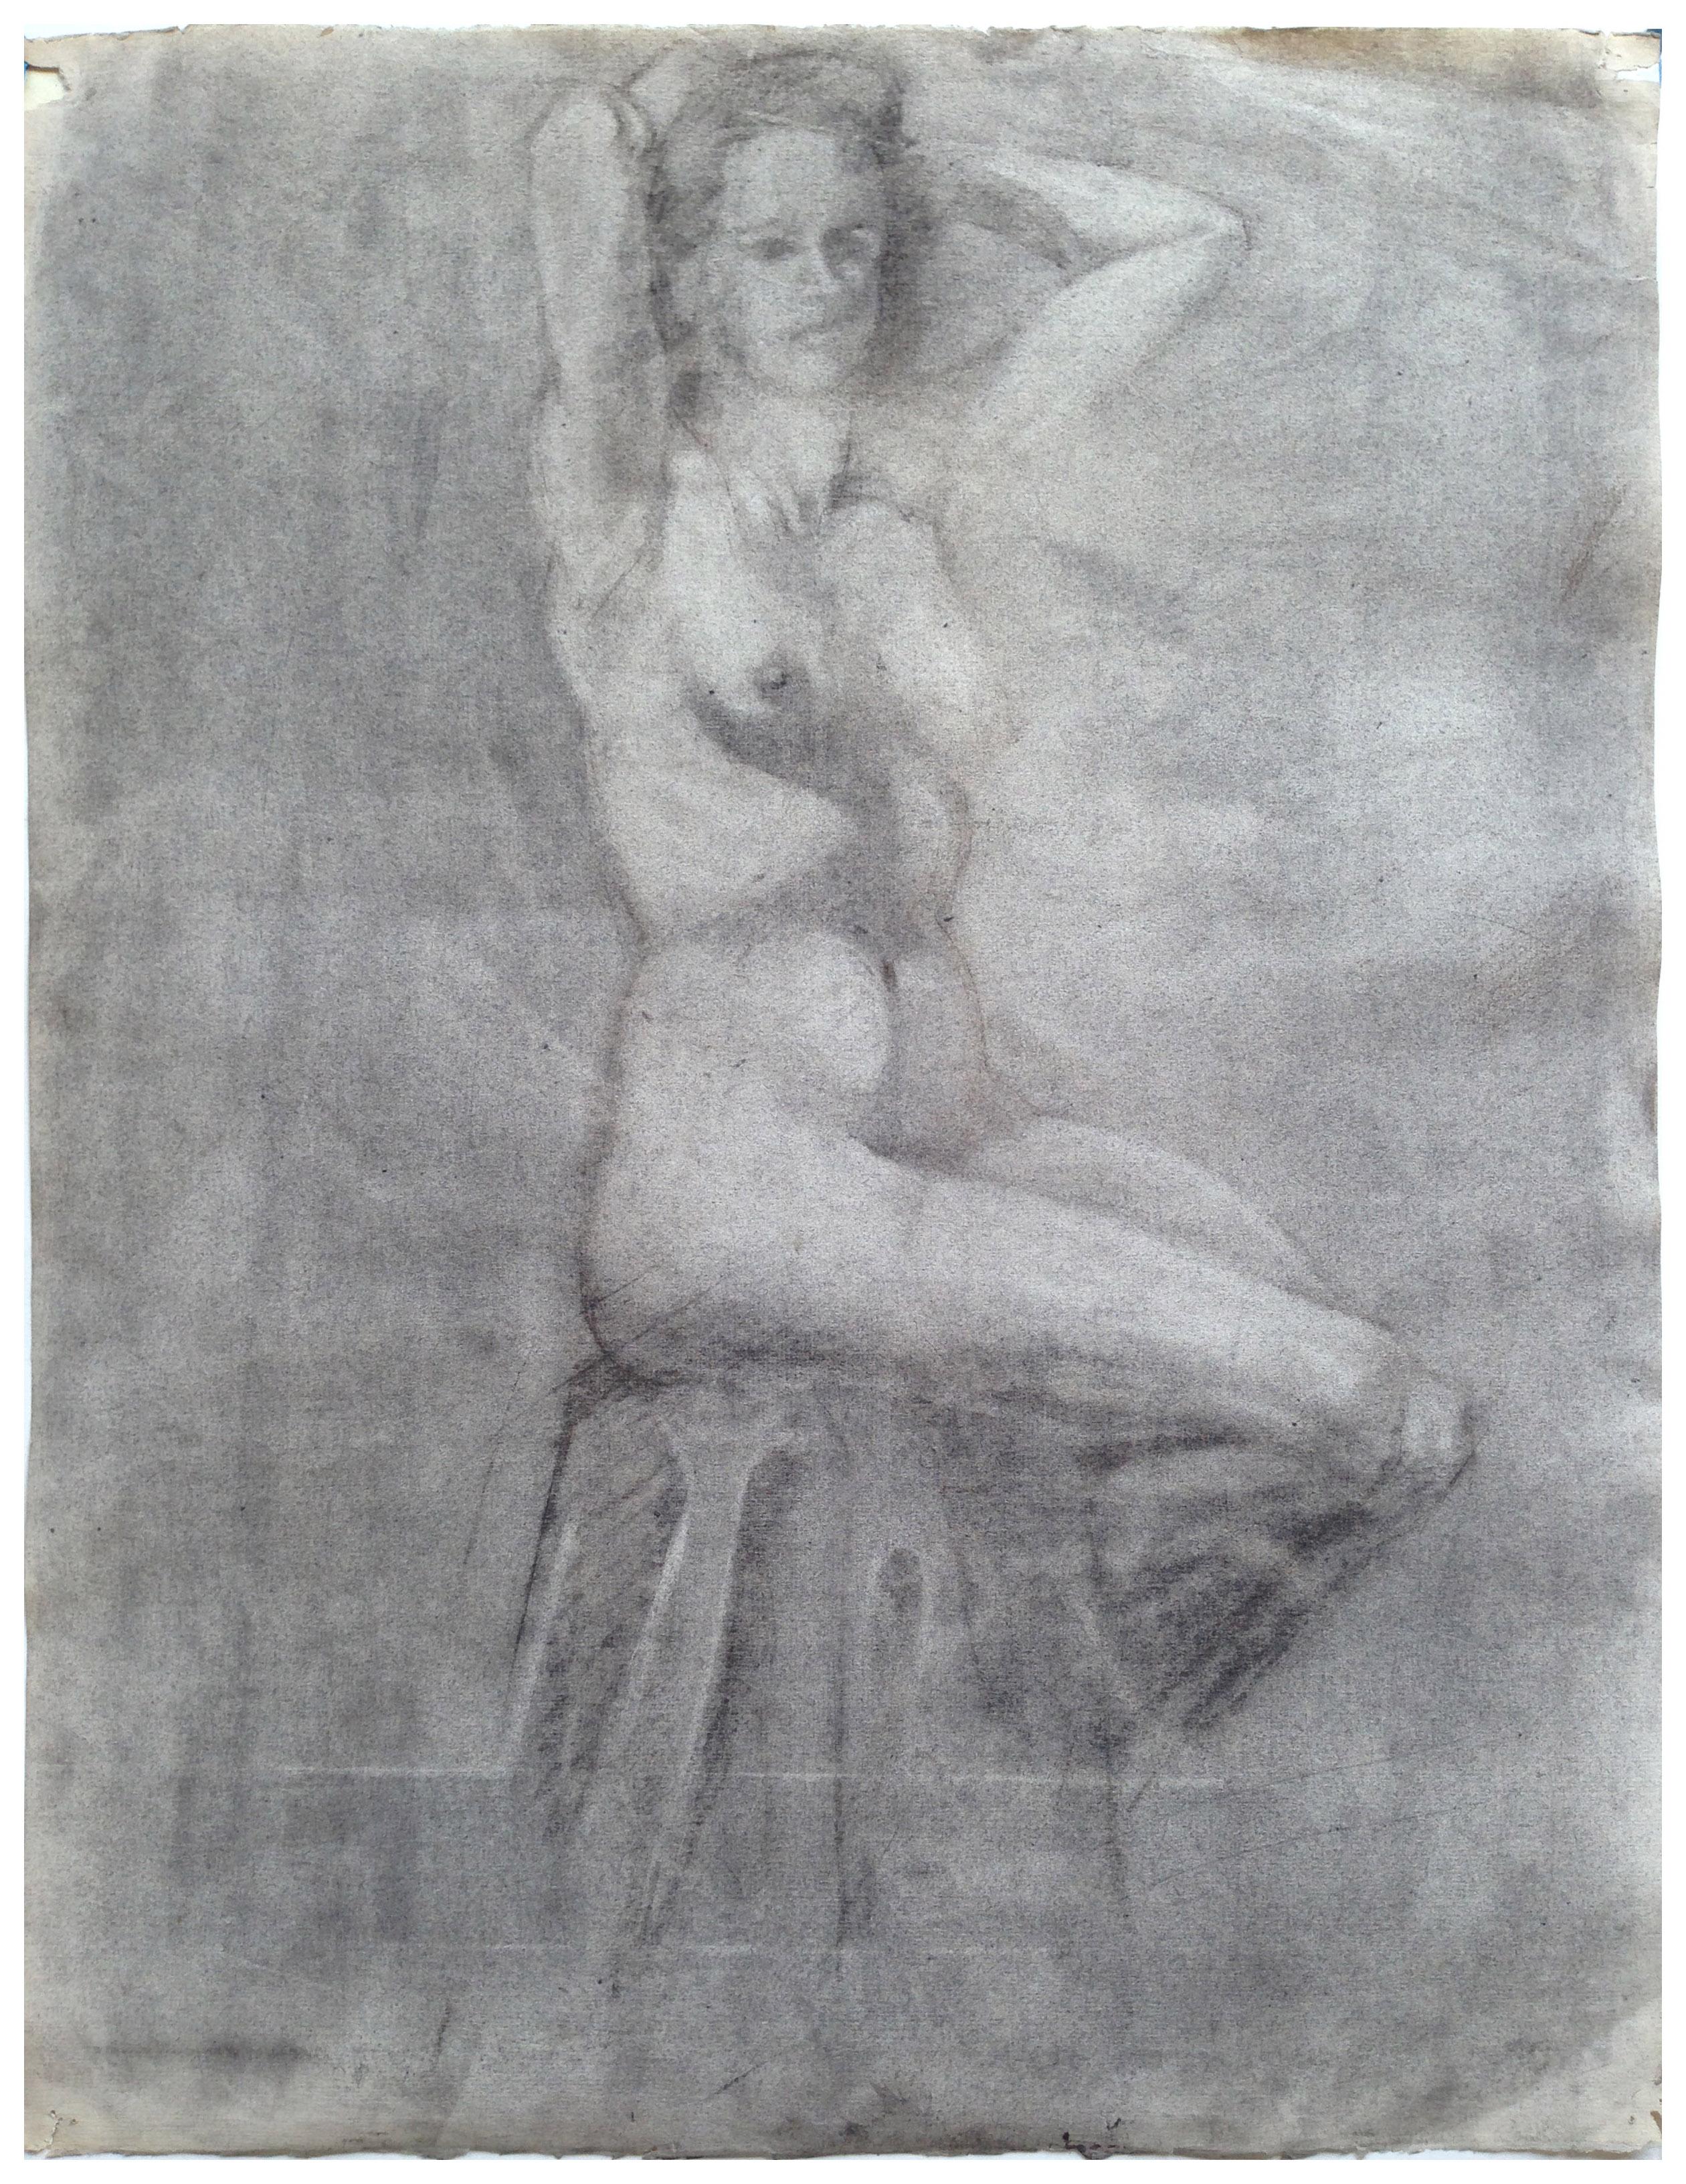 Unknown Figurative Art - 1940s Seated Nude Figure Study 